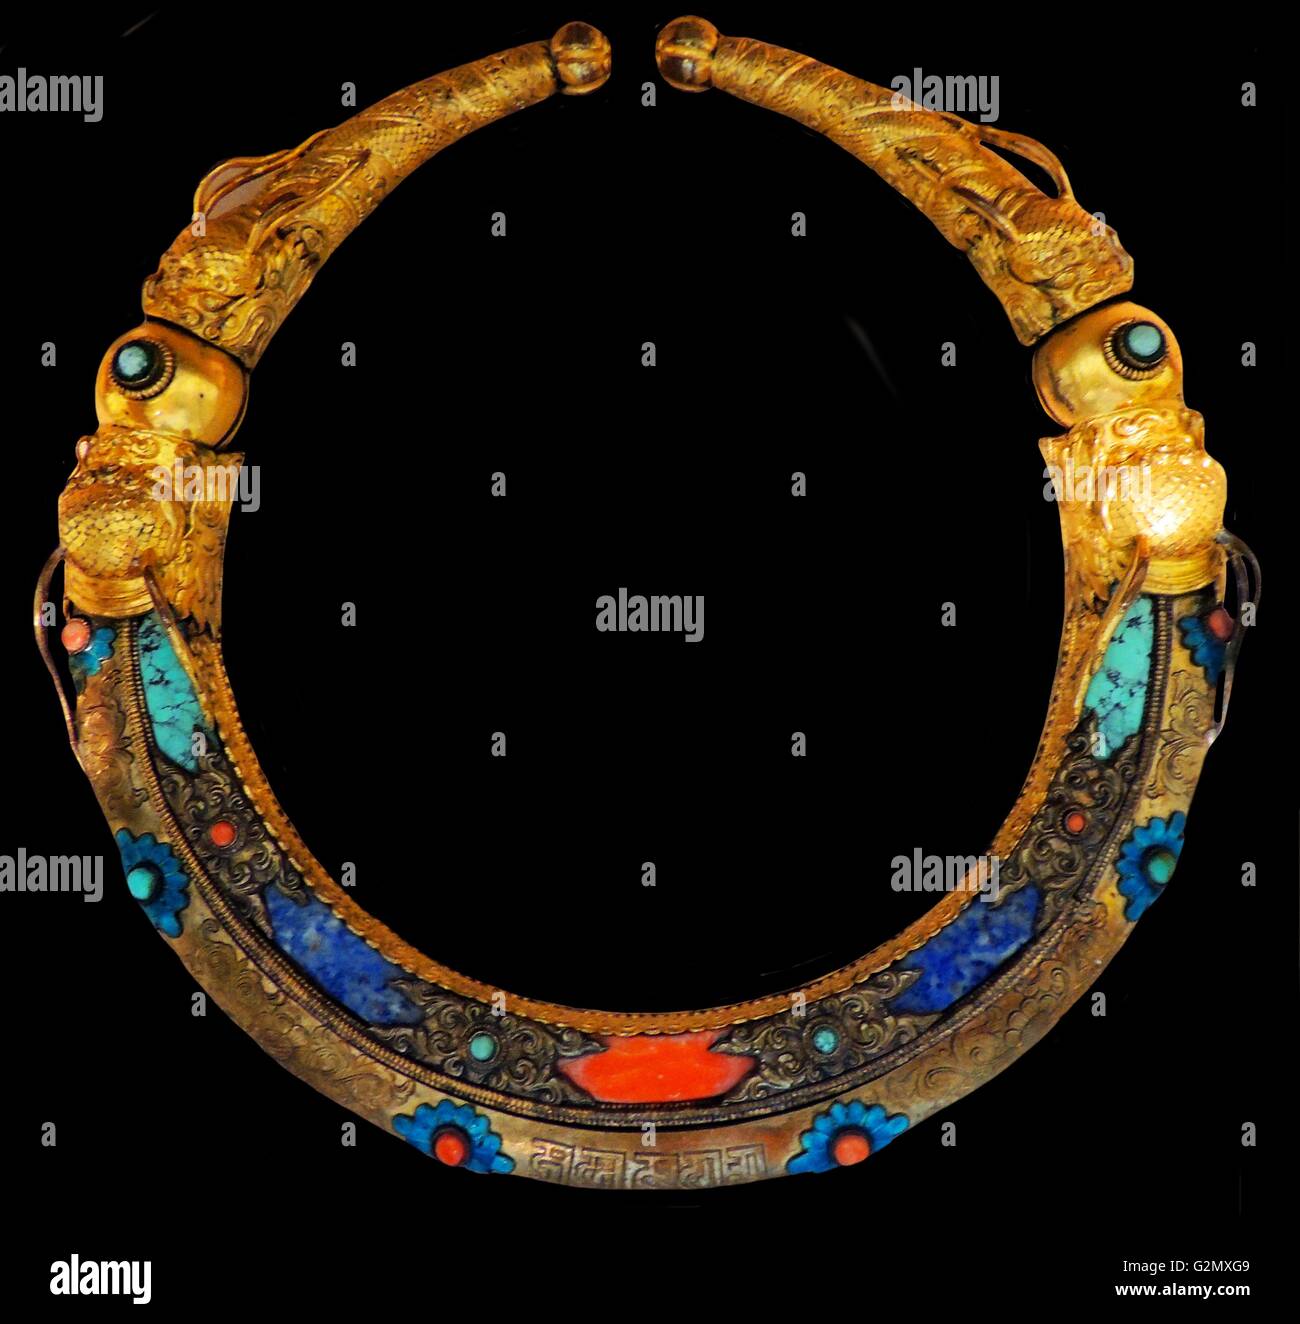 Esto puede ser un collar con terminales con bisagras del Tíbet, siglo XVIII AD, pero esto no está claro. Foto de stock